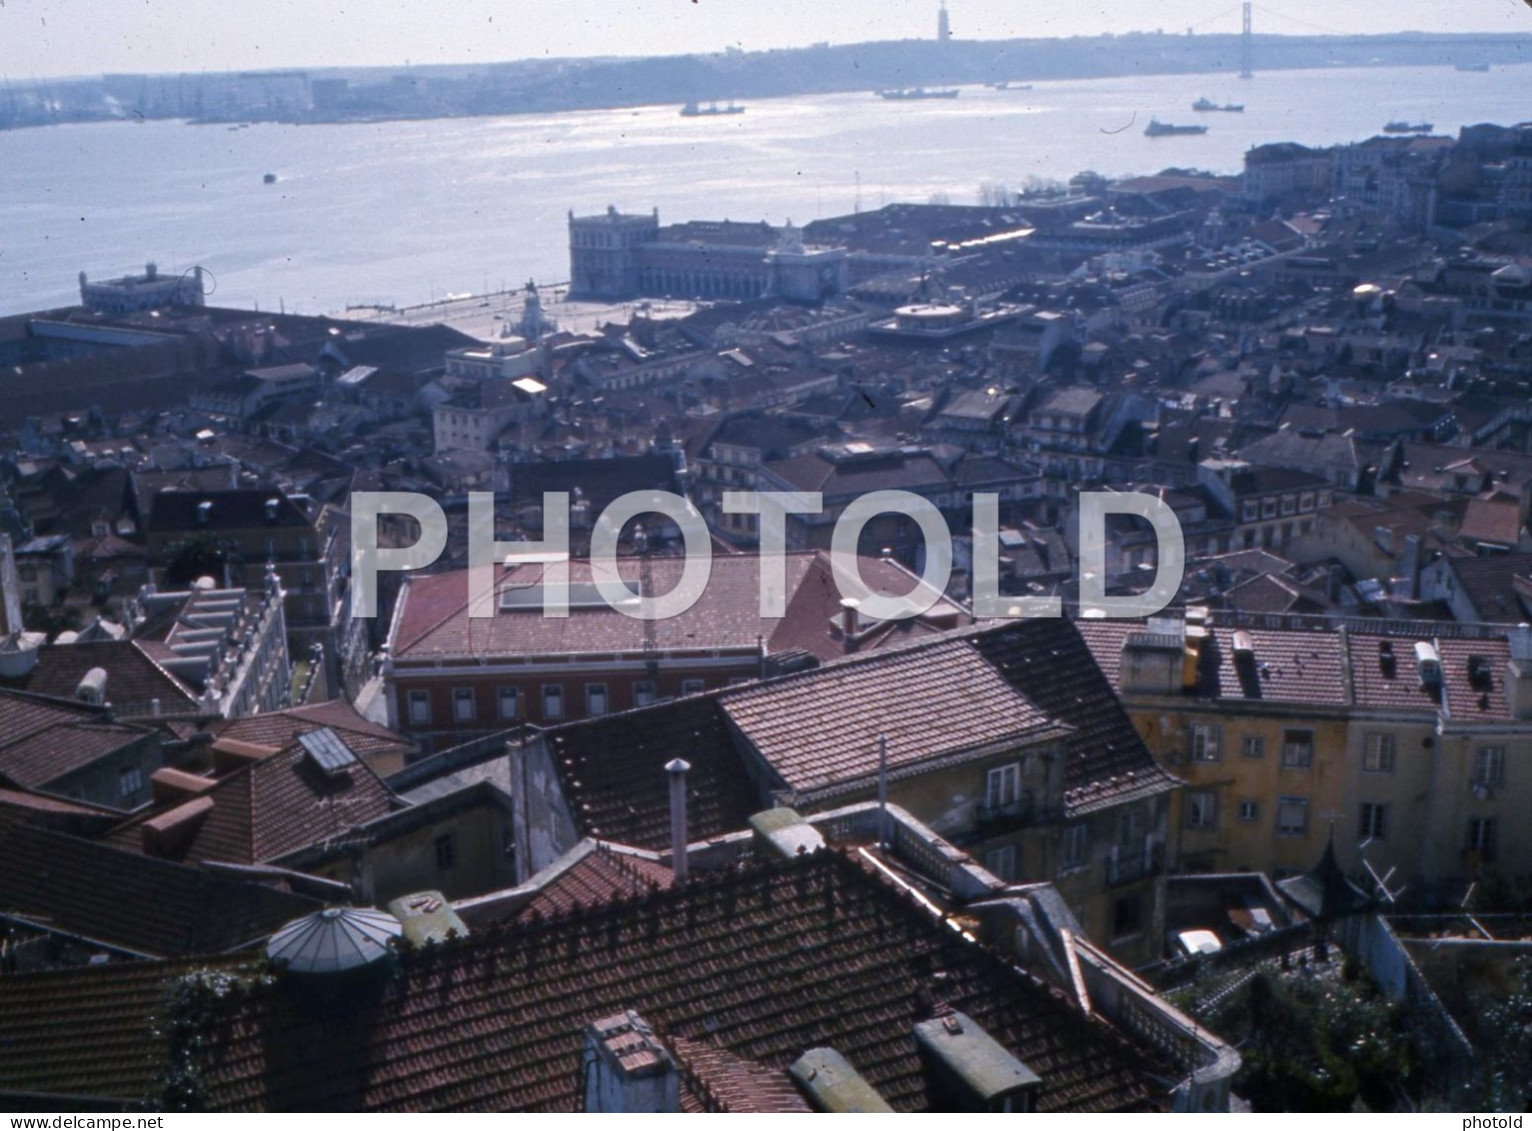 4 SLIDES SET 1984 LISBOA LISBON PORTUGAL 16mm DIAPOSITIVE SLIDE Not PHOTO No FOTO NB4047 - Diapositivas